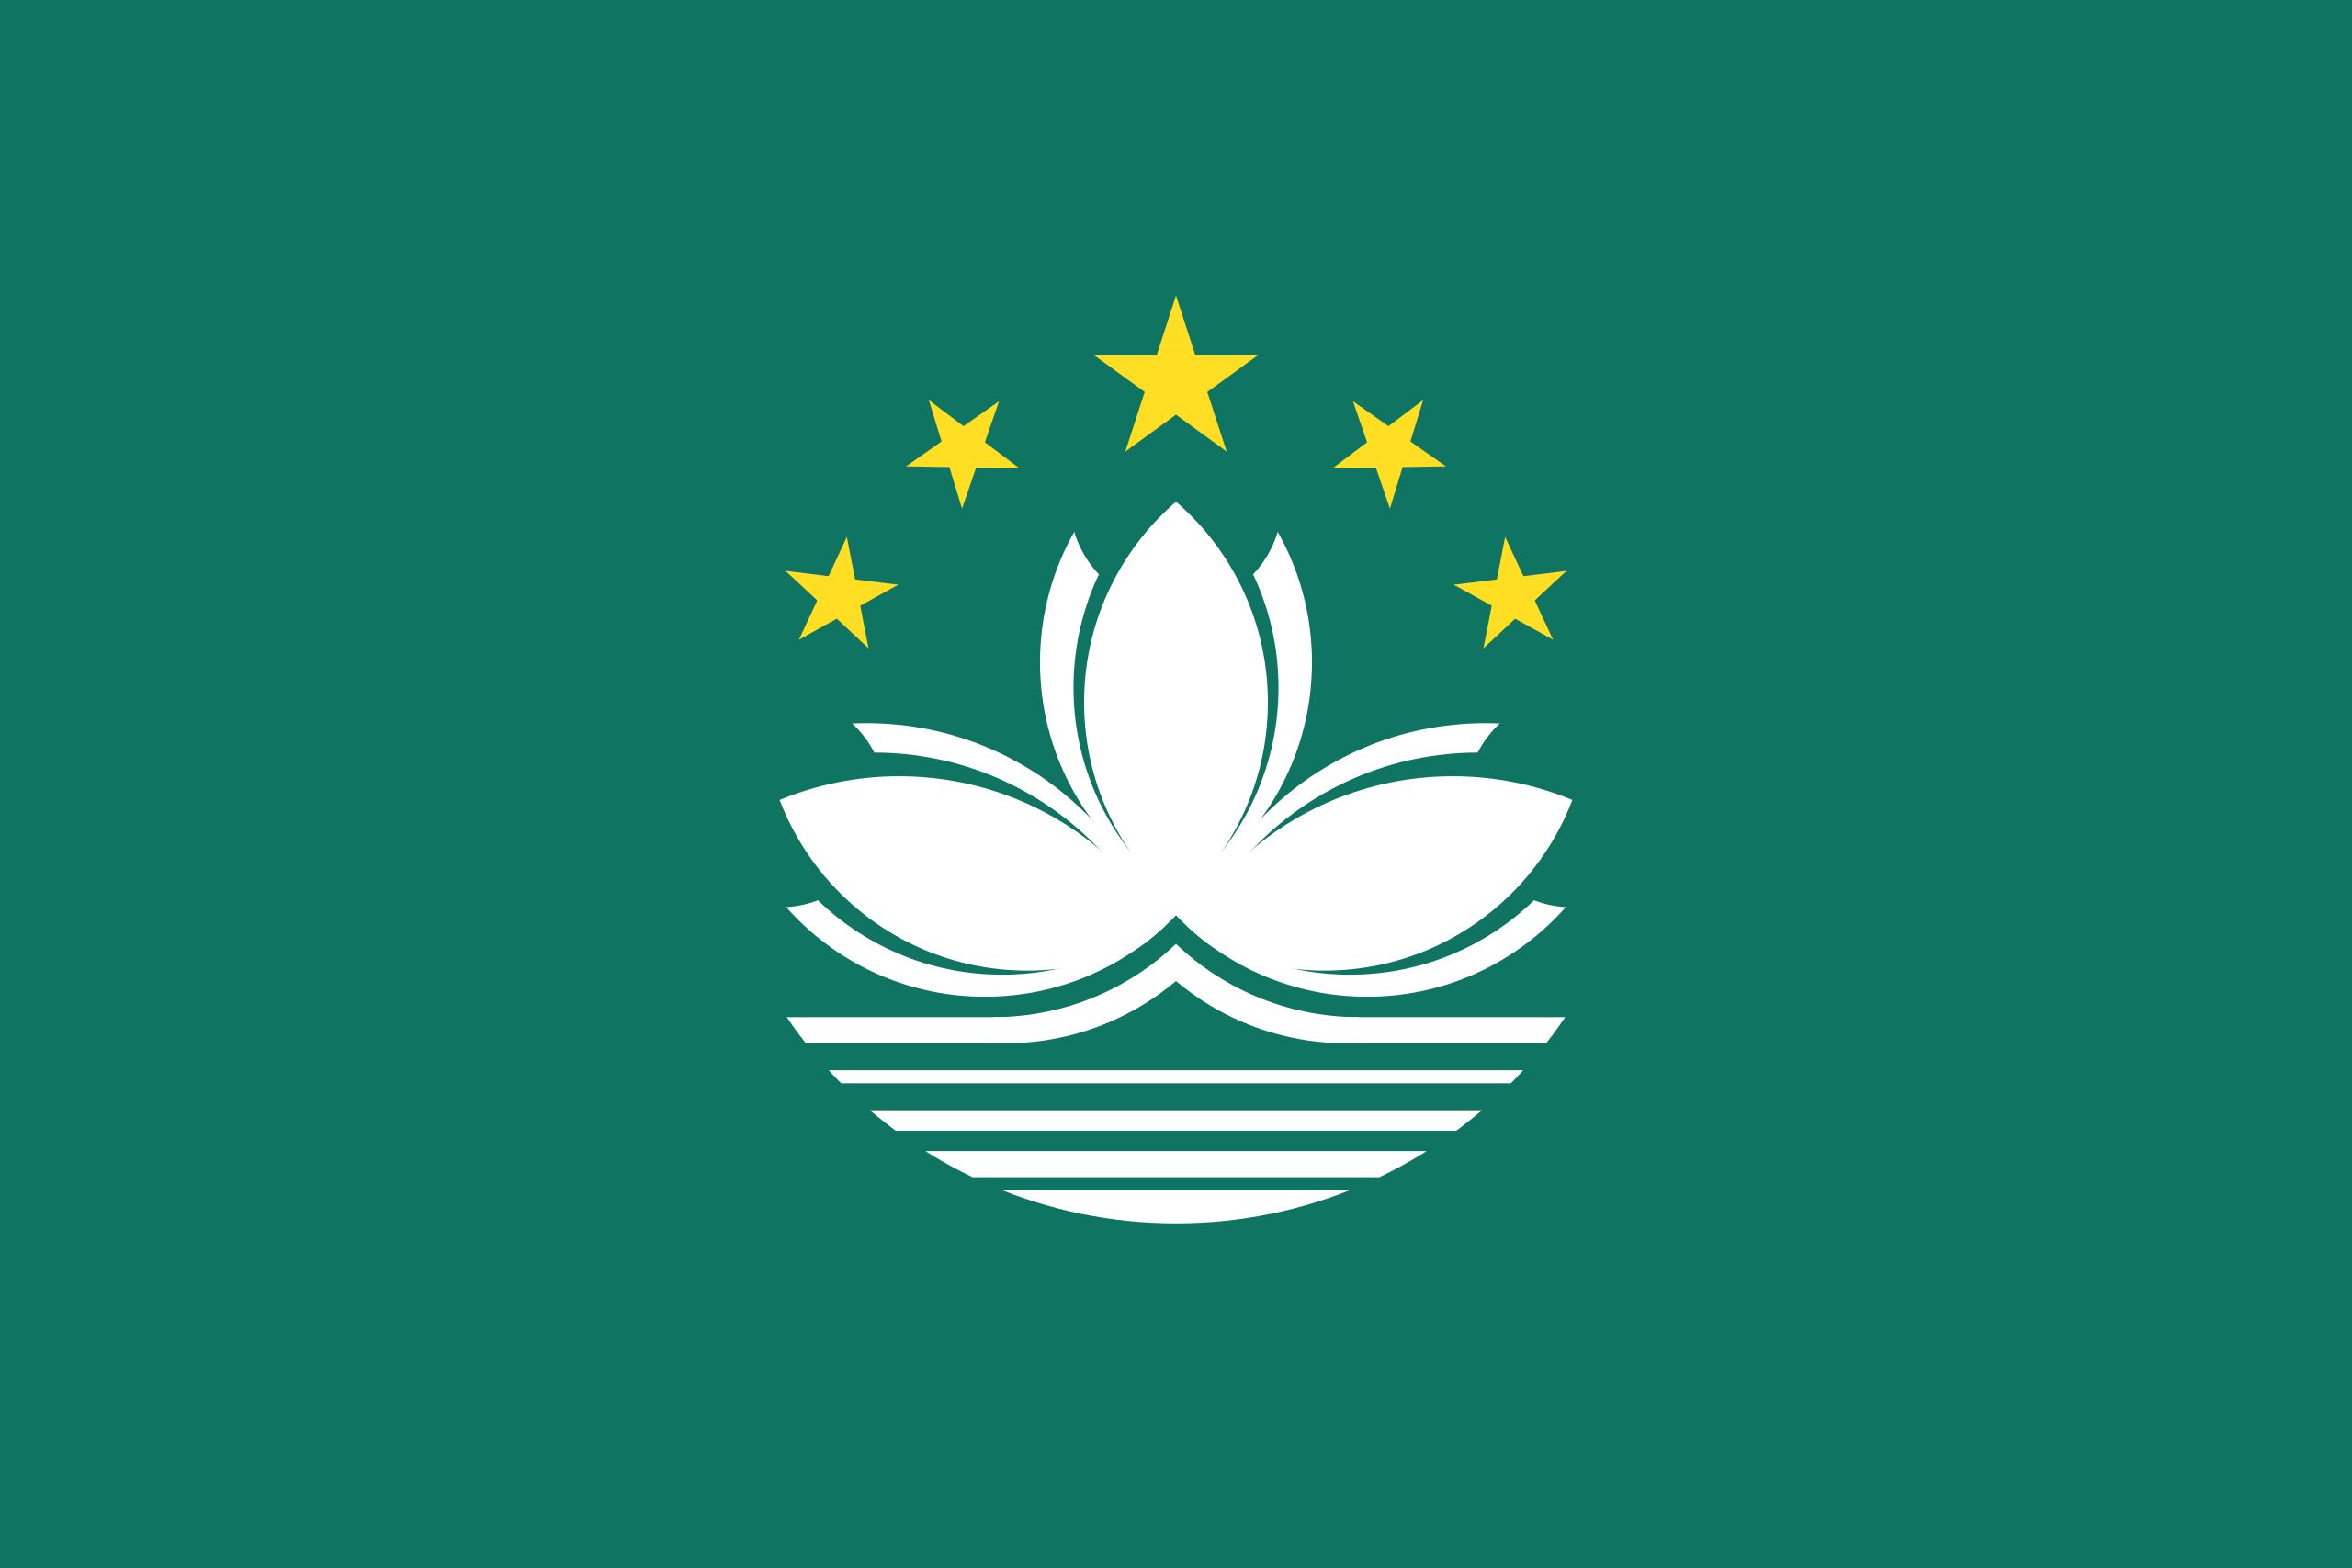 General 2560x1707 Macau logo flag simple background minimalism